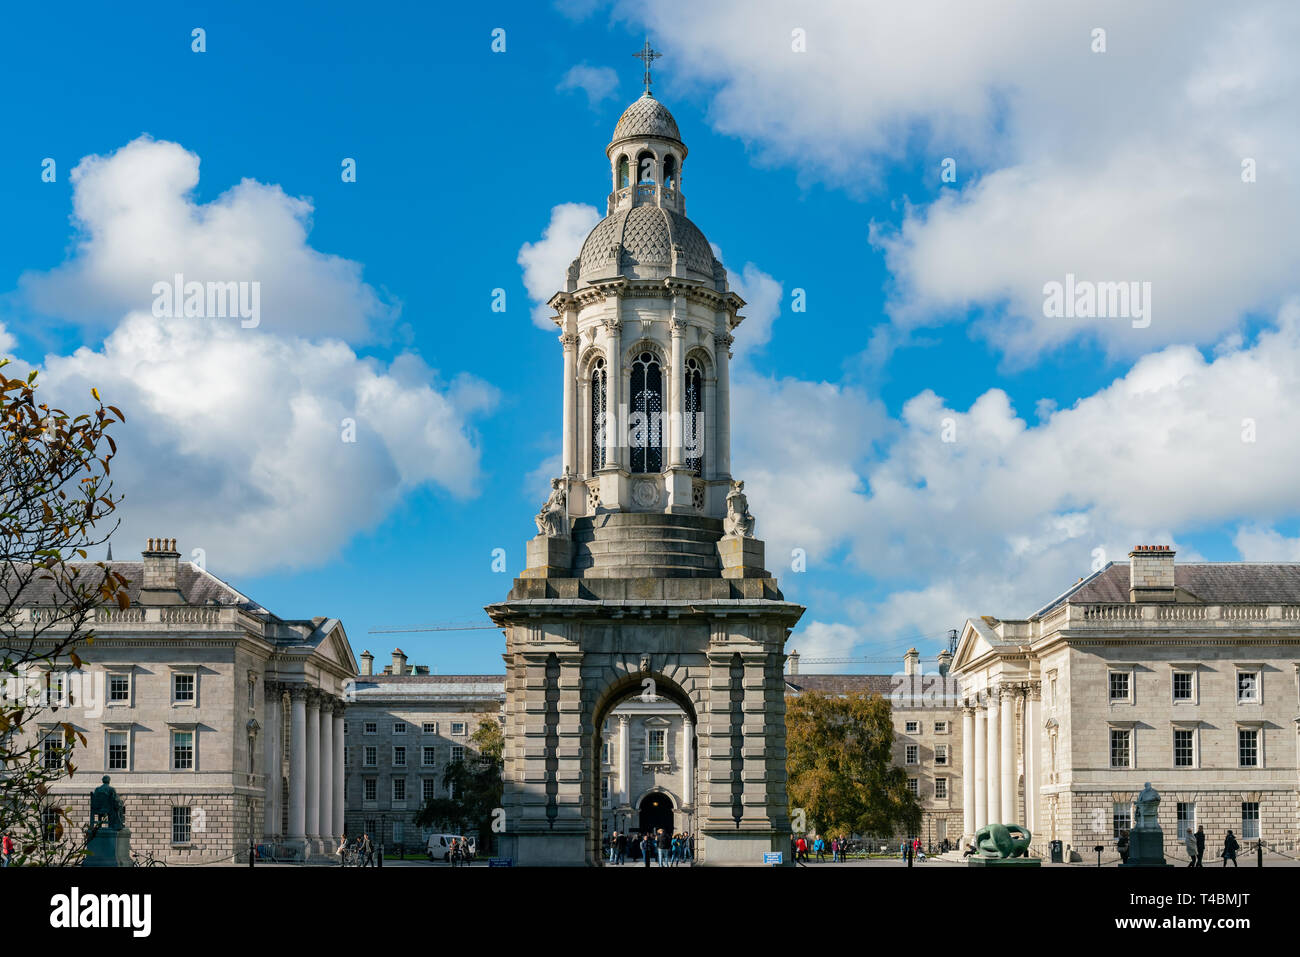 Monuments célèbres - le Campanile de Trinity College de Dublin, Irlande Banque D'Images